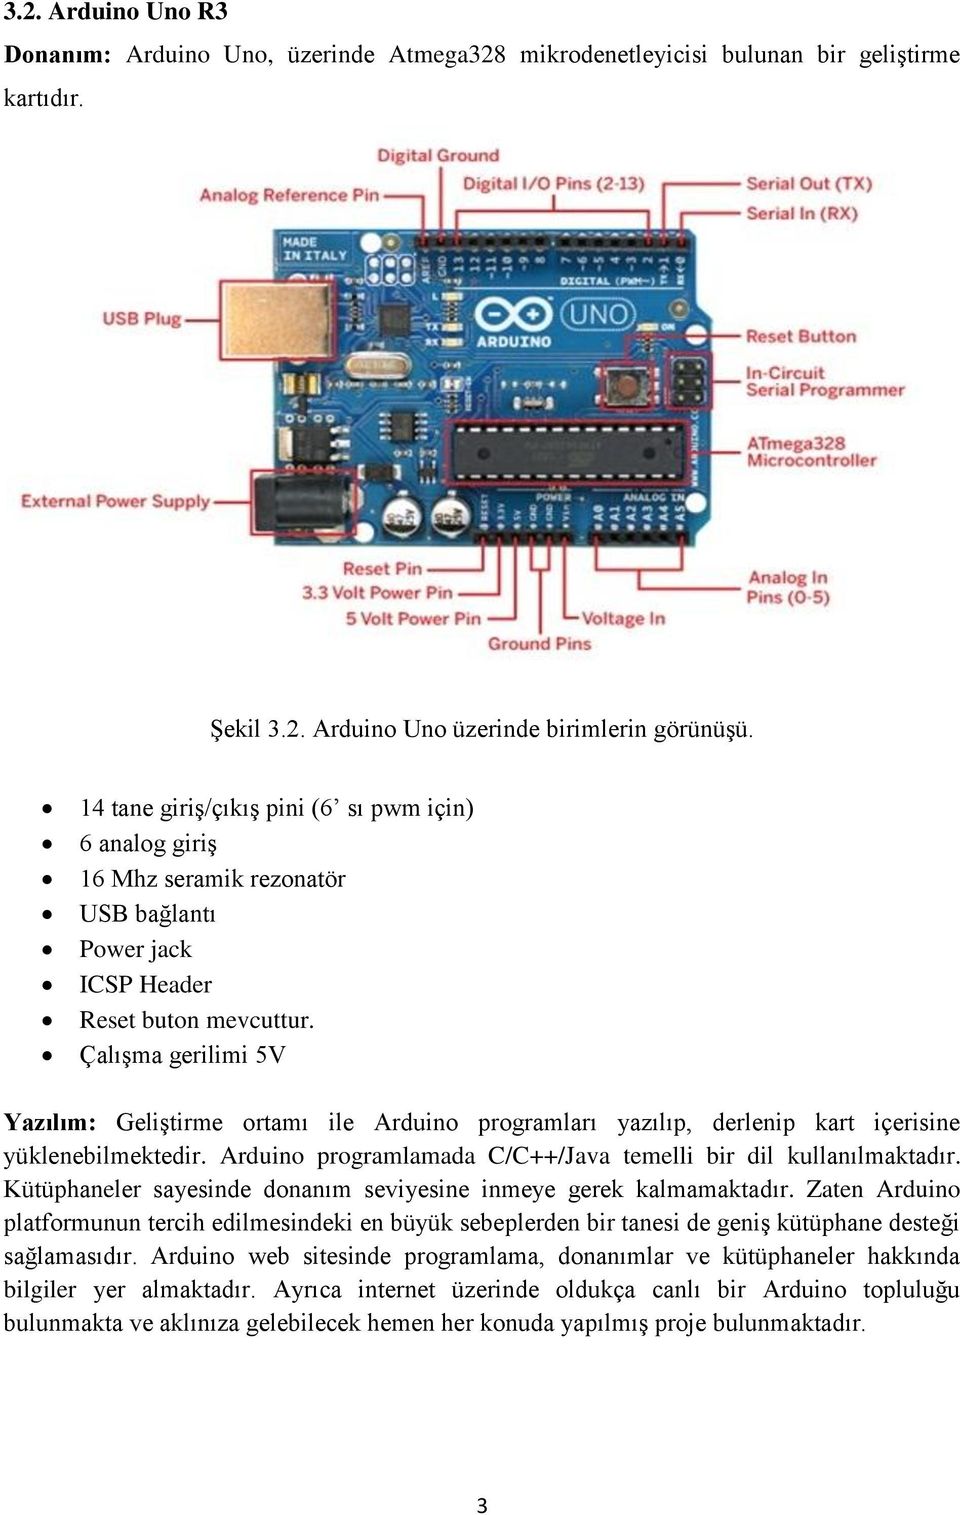 Çalışma gerilimi 5V Yazılım: Geliştirme ortamı ile Arduino programları yazılıp, derlenip kart içerisine yüklenebilmektedir. Arduino programlamada C/C++/Java temelli bir dil kullanılmaktadır.